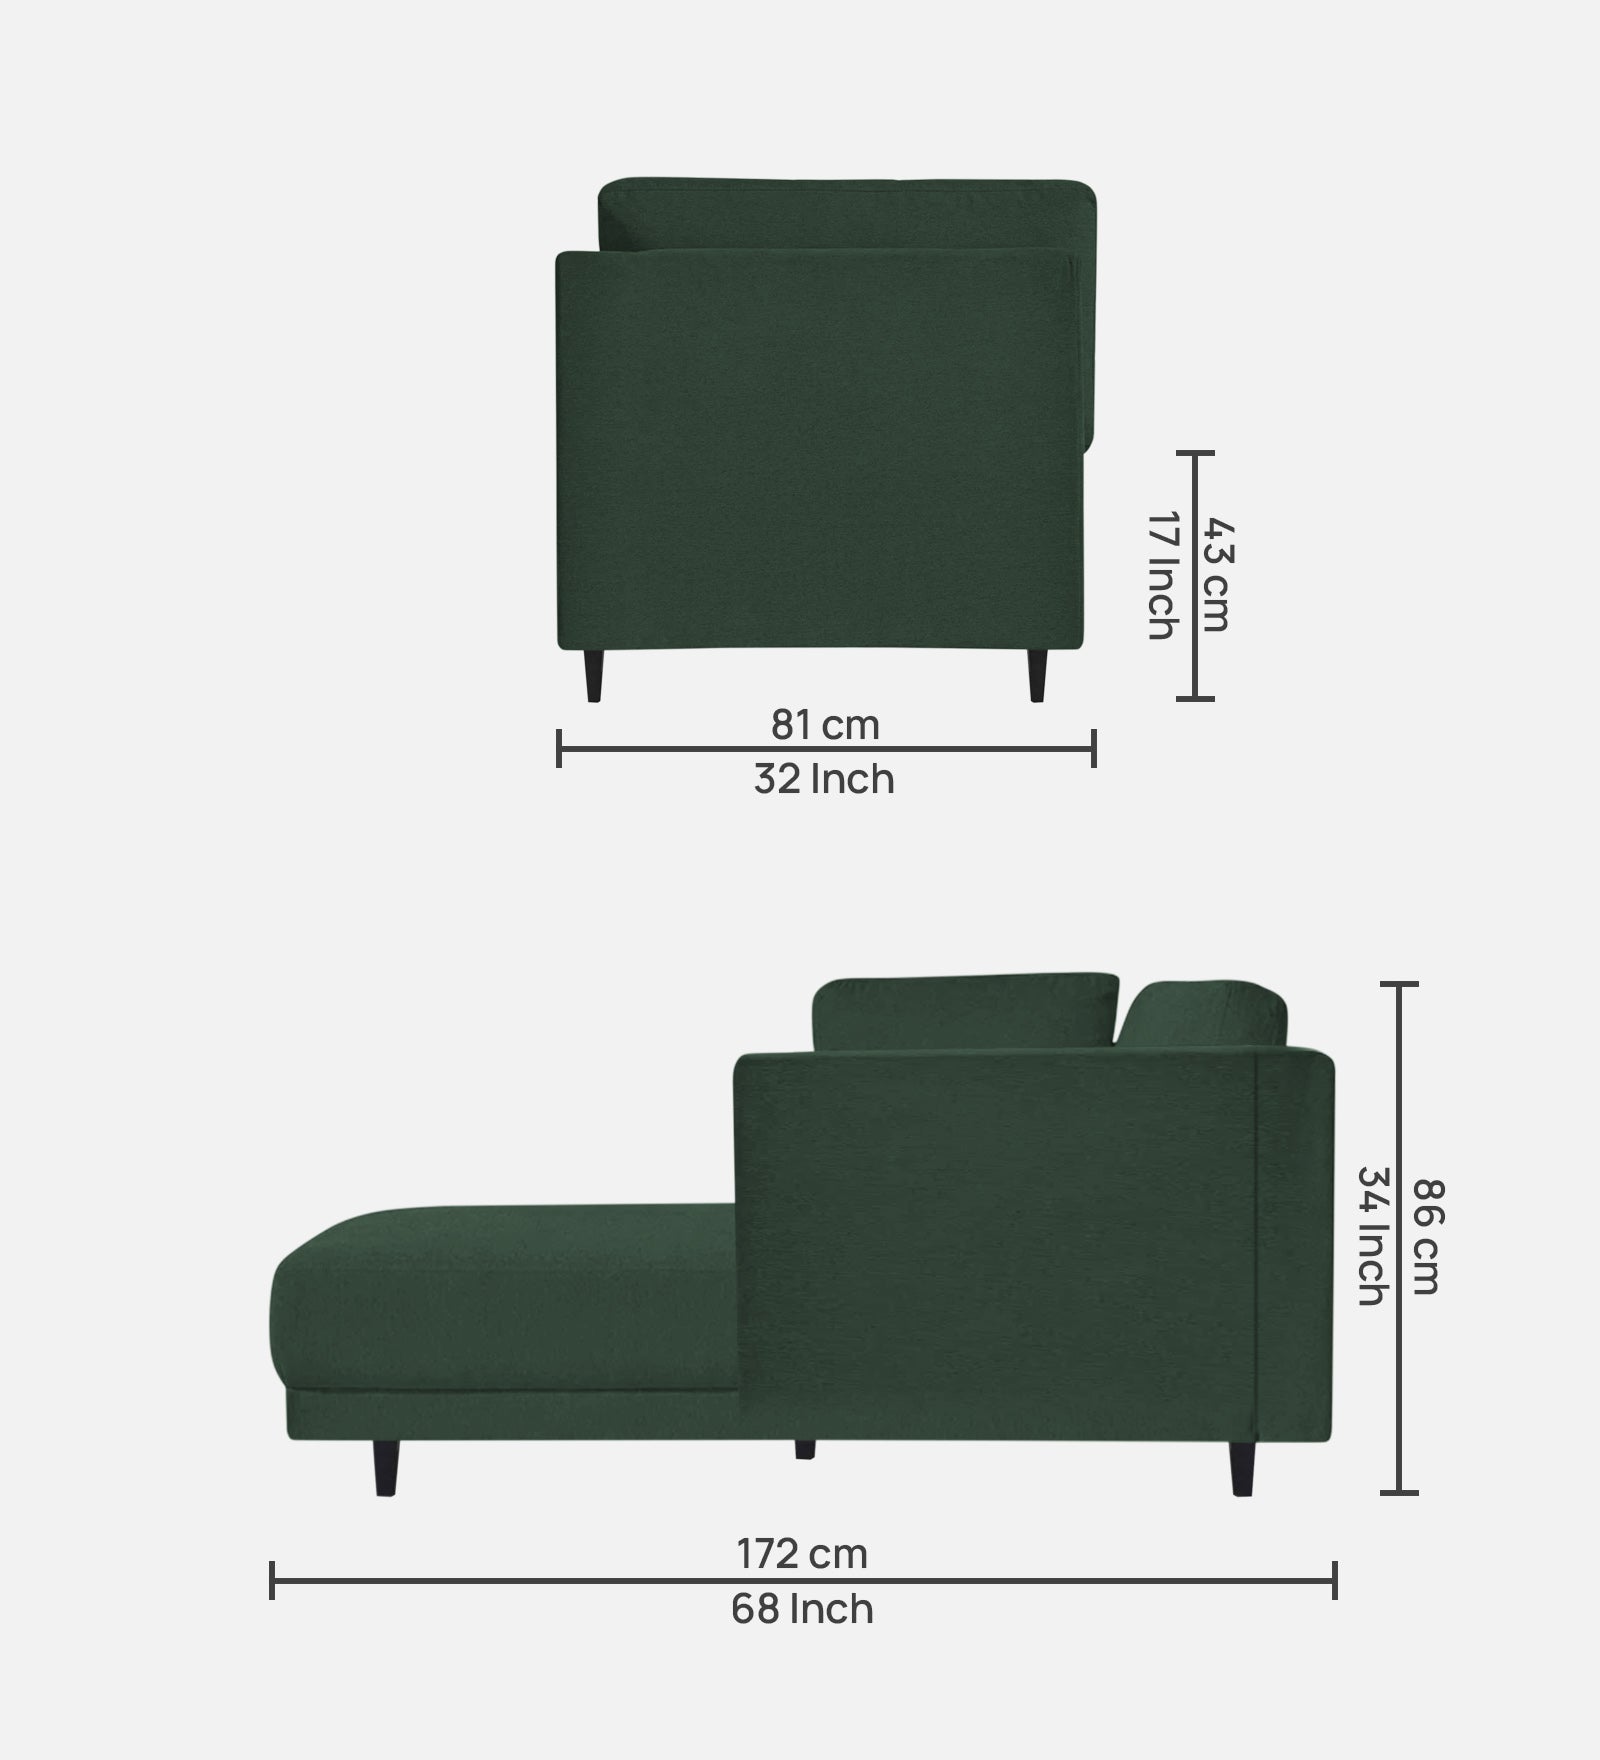 Jonze Velvet LHS Chaise Lounger in Amazon Green Colour